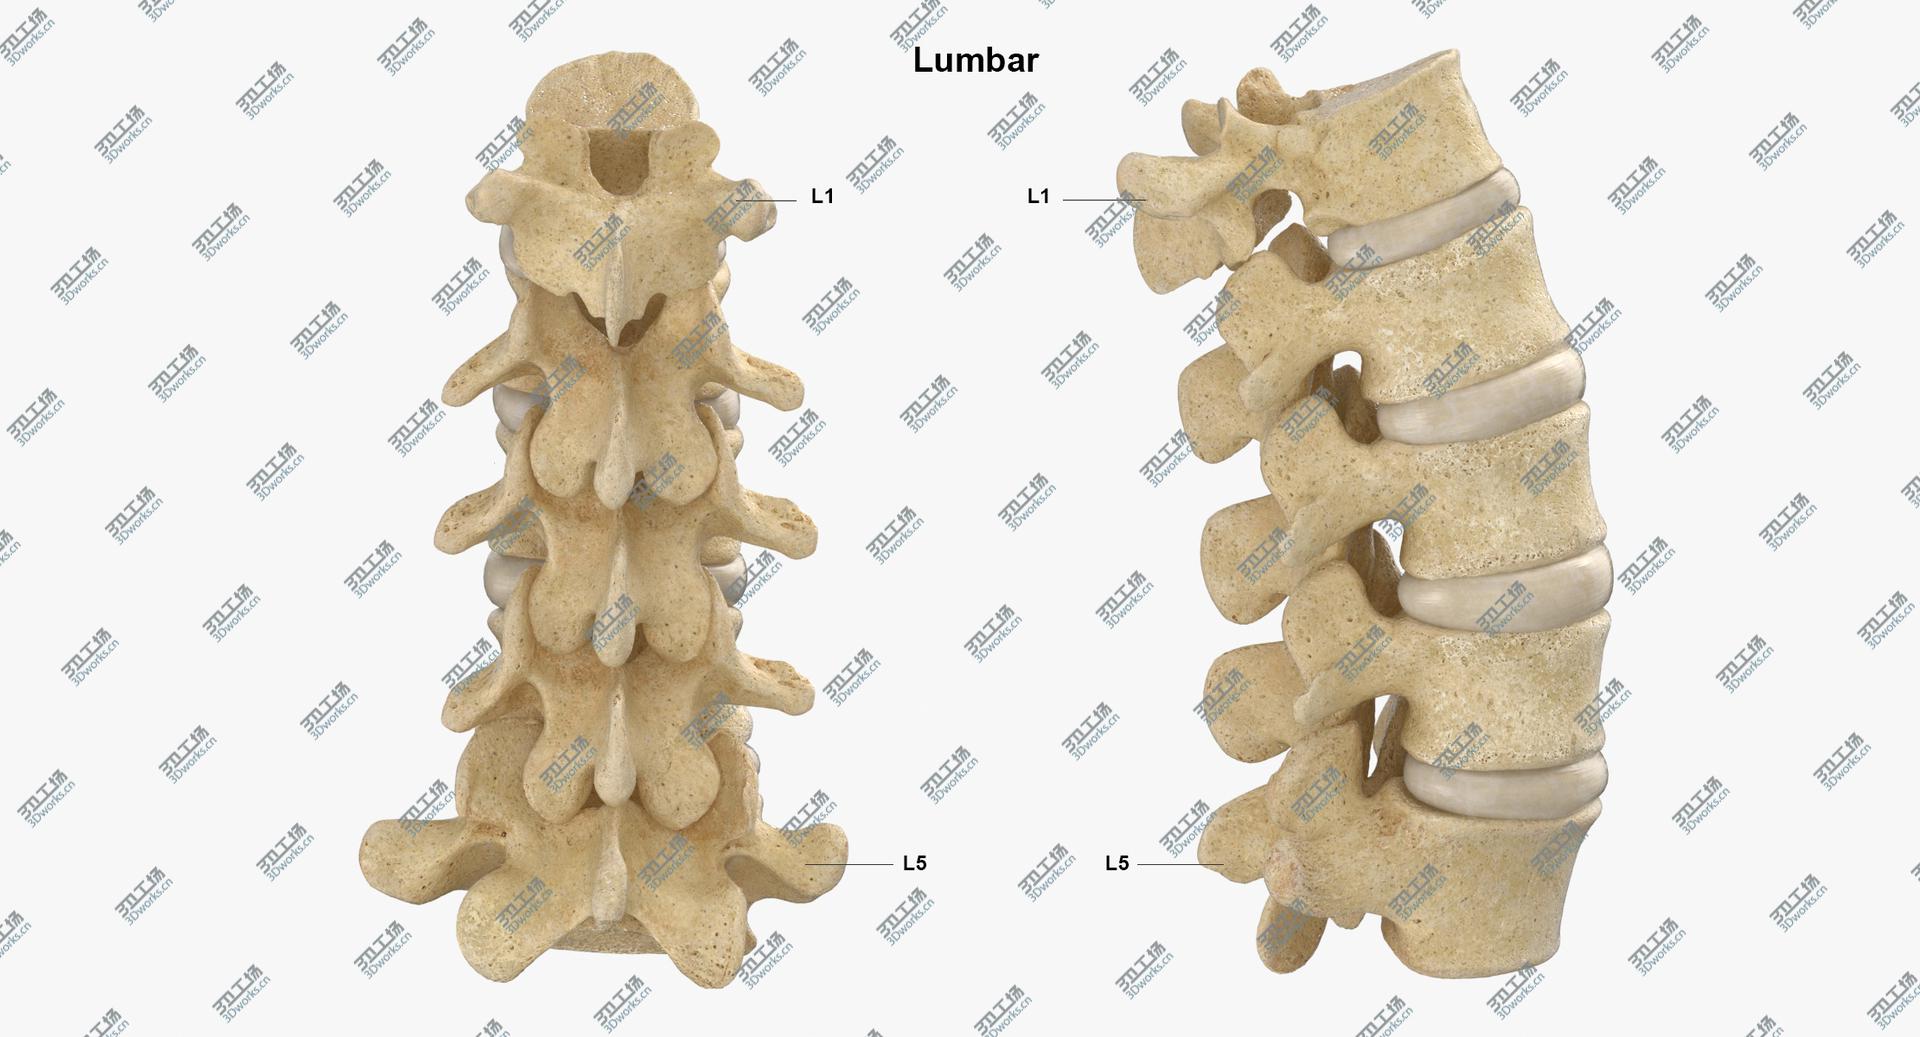 images/goods_img/202105071/Real Human Lumbar Vertebrae L1 to L5 Bones With Intervertibral Disks 01 model/4.jpg